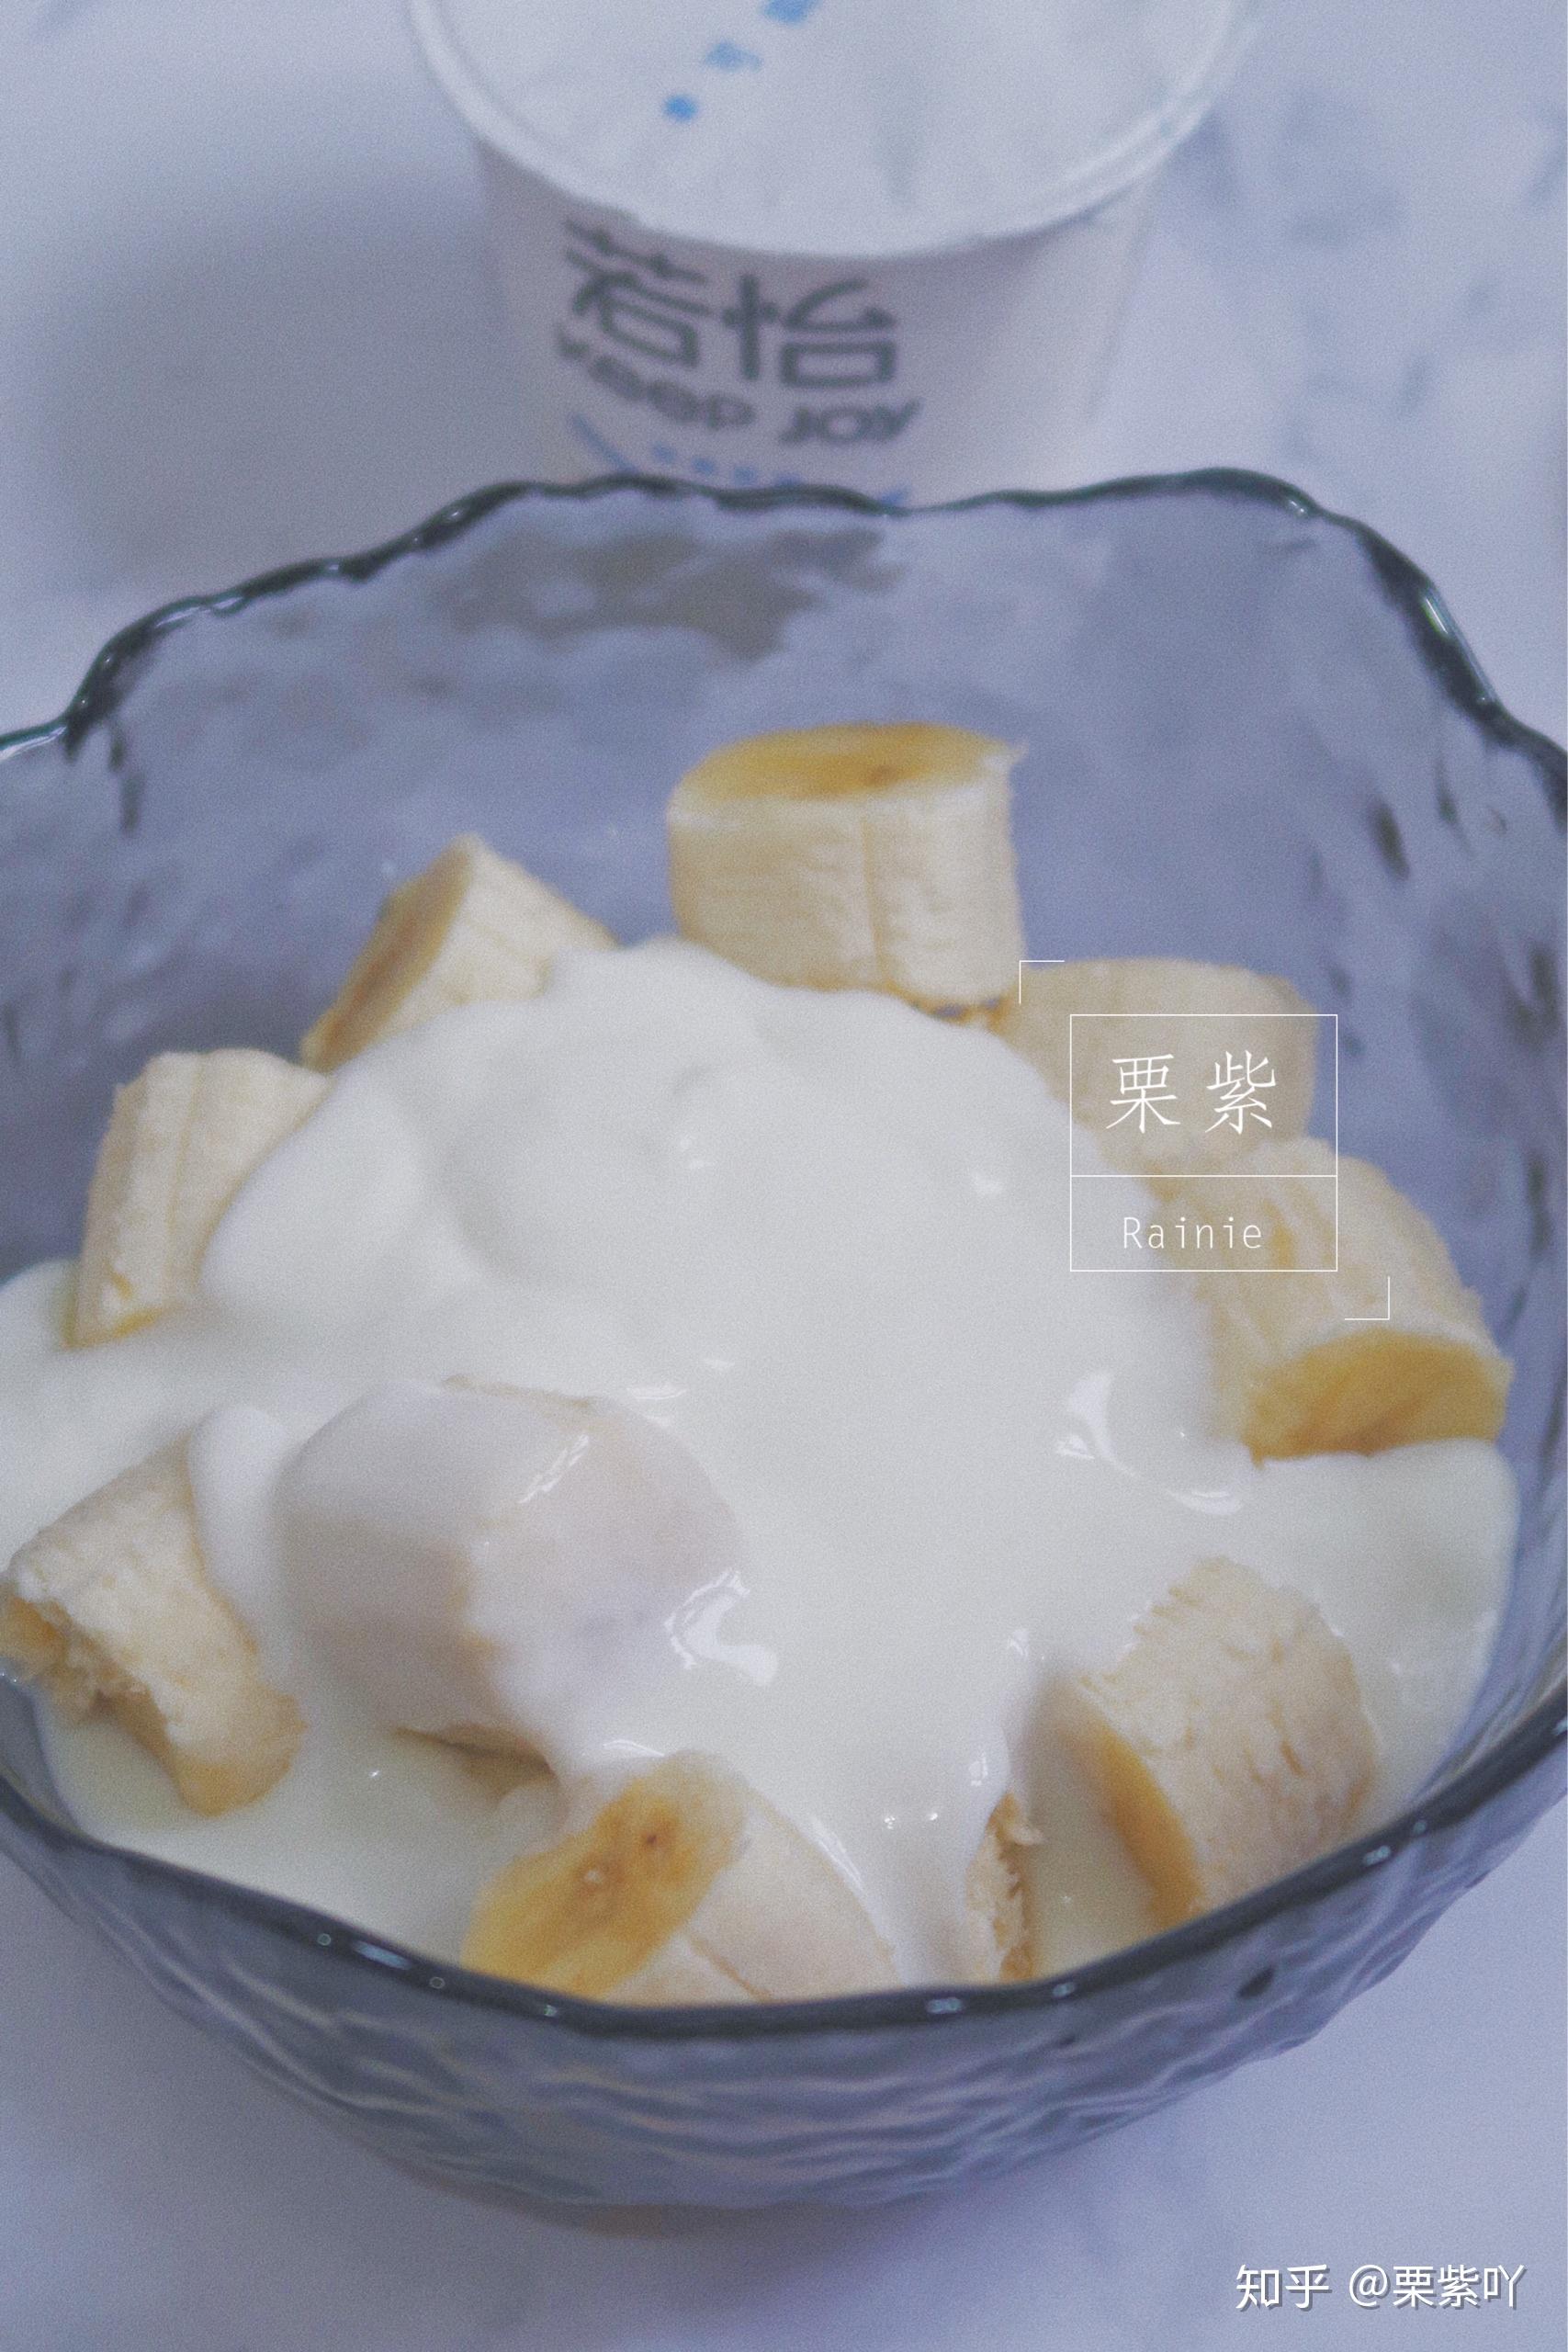 酸奶用香蕉 库存照片. 图片 包括有 甜甜, 嘎吱咬嚼, 点心, 健康, 虚拟, 乳脂状, 生活, 牛奶 - 55091142